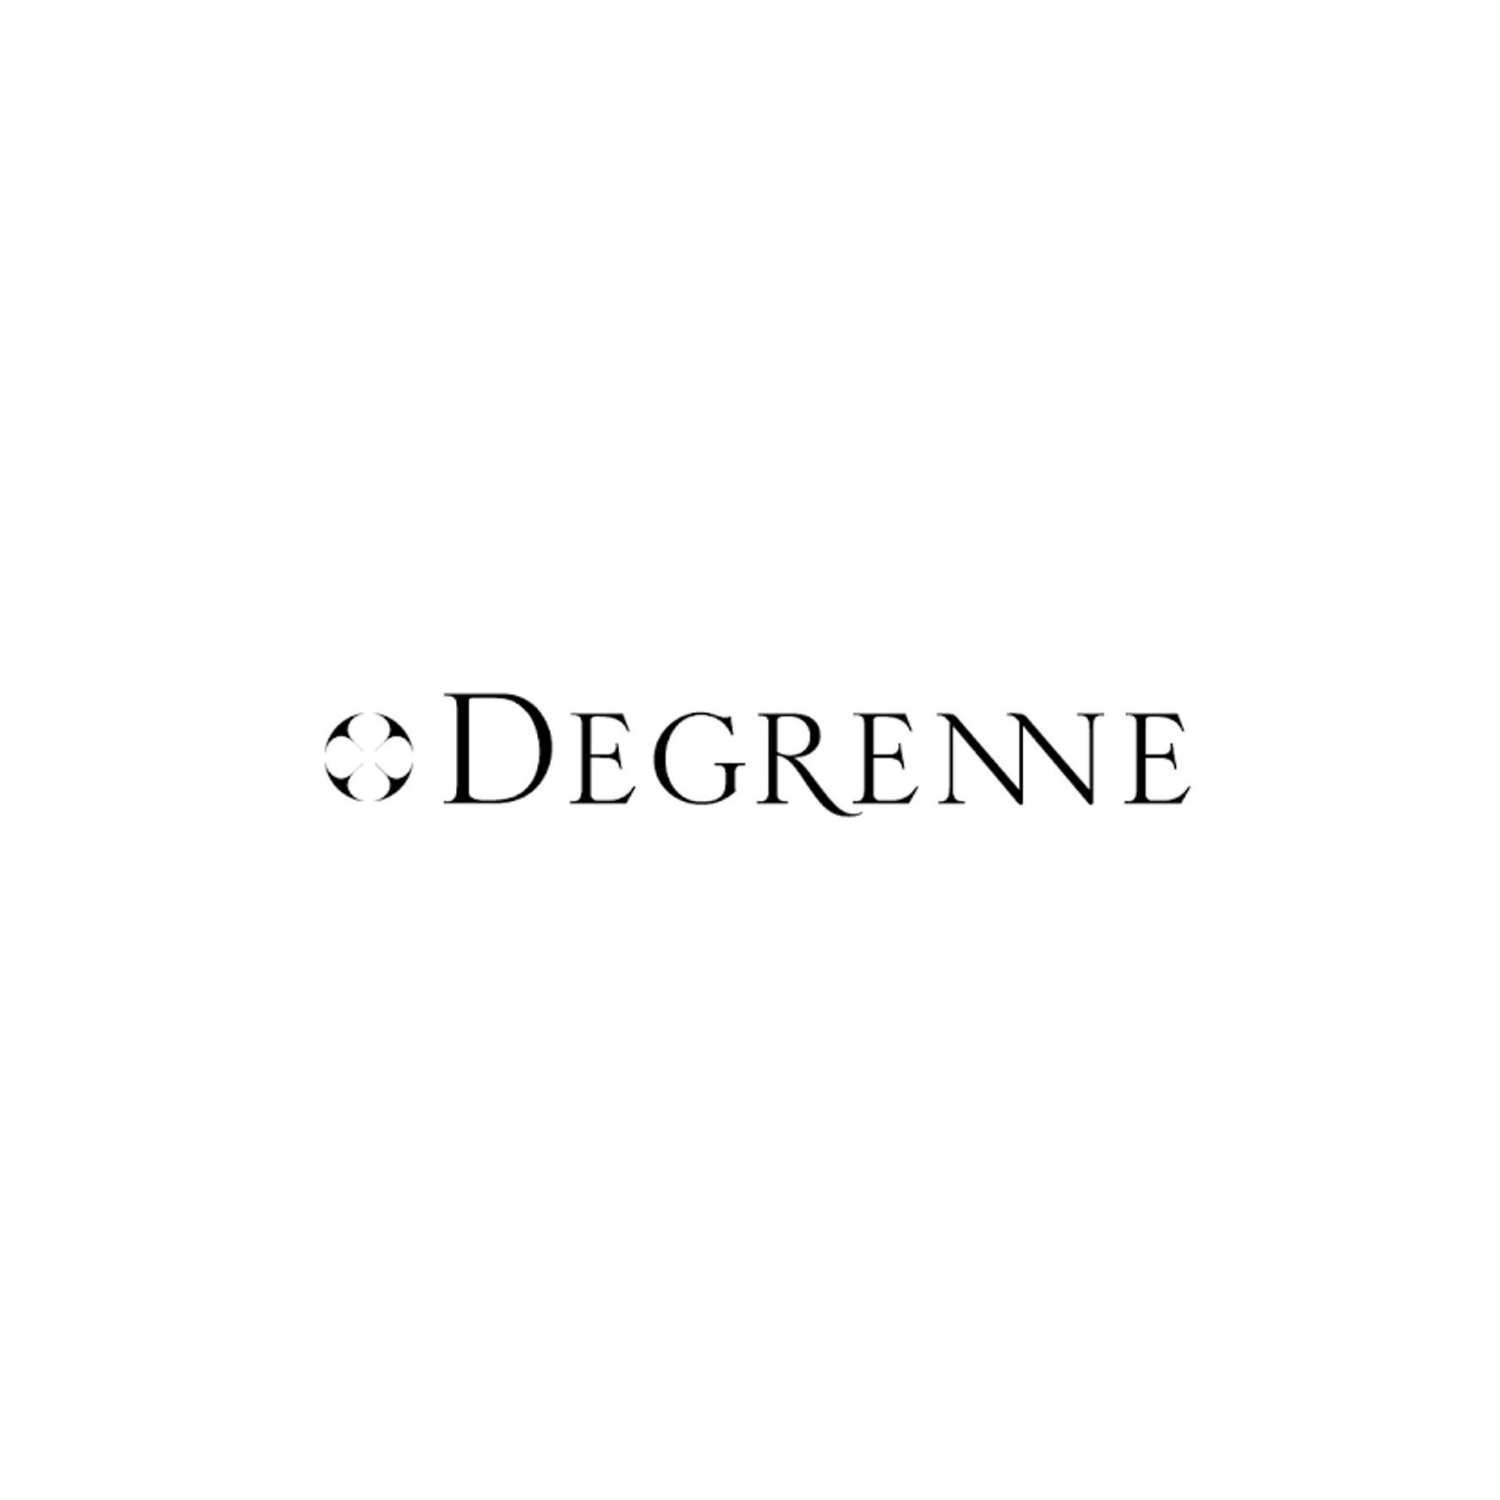 guy-degrenne-logo